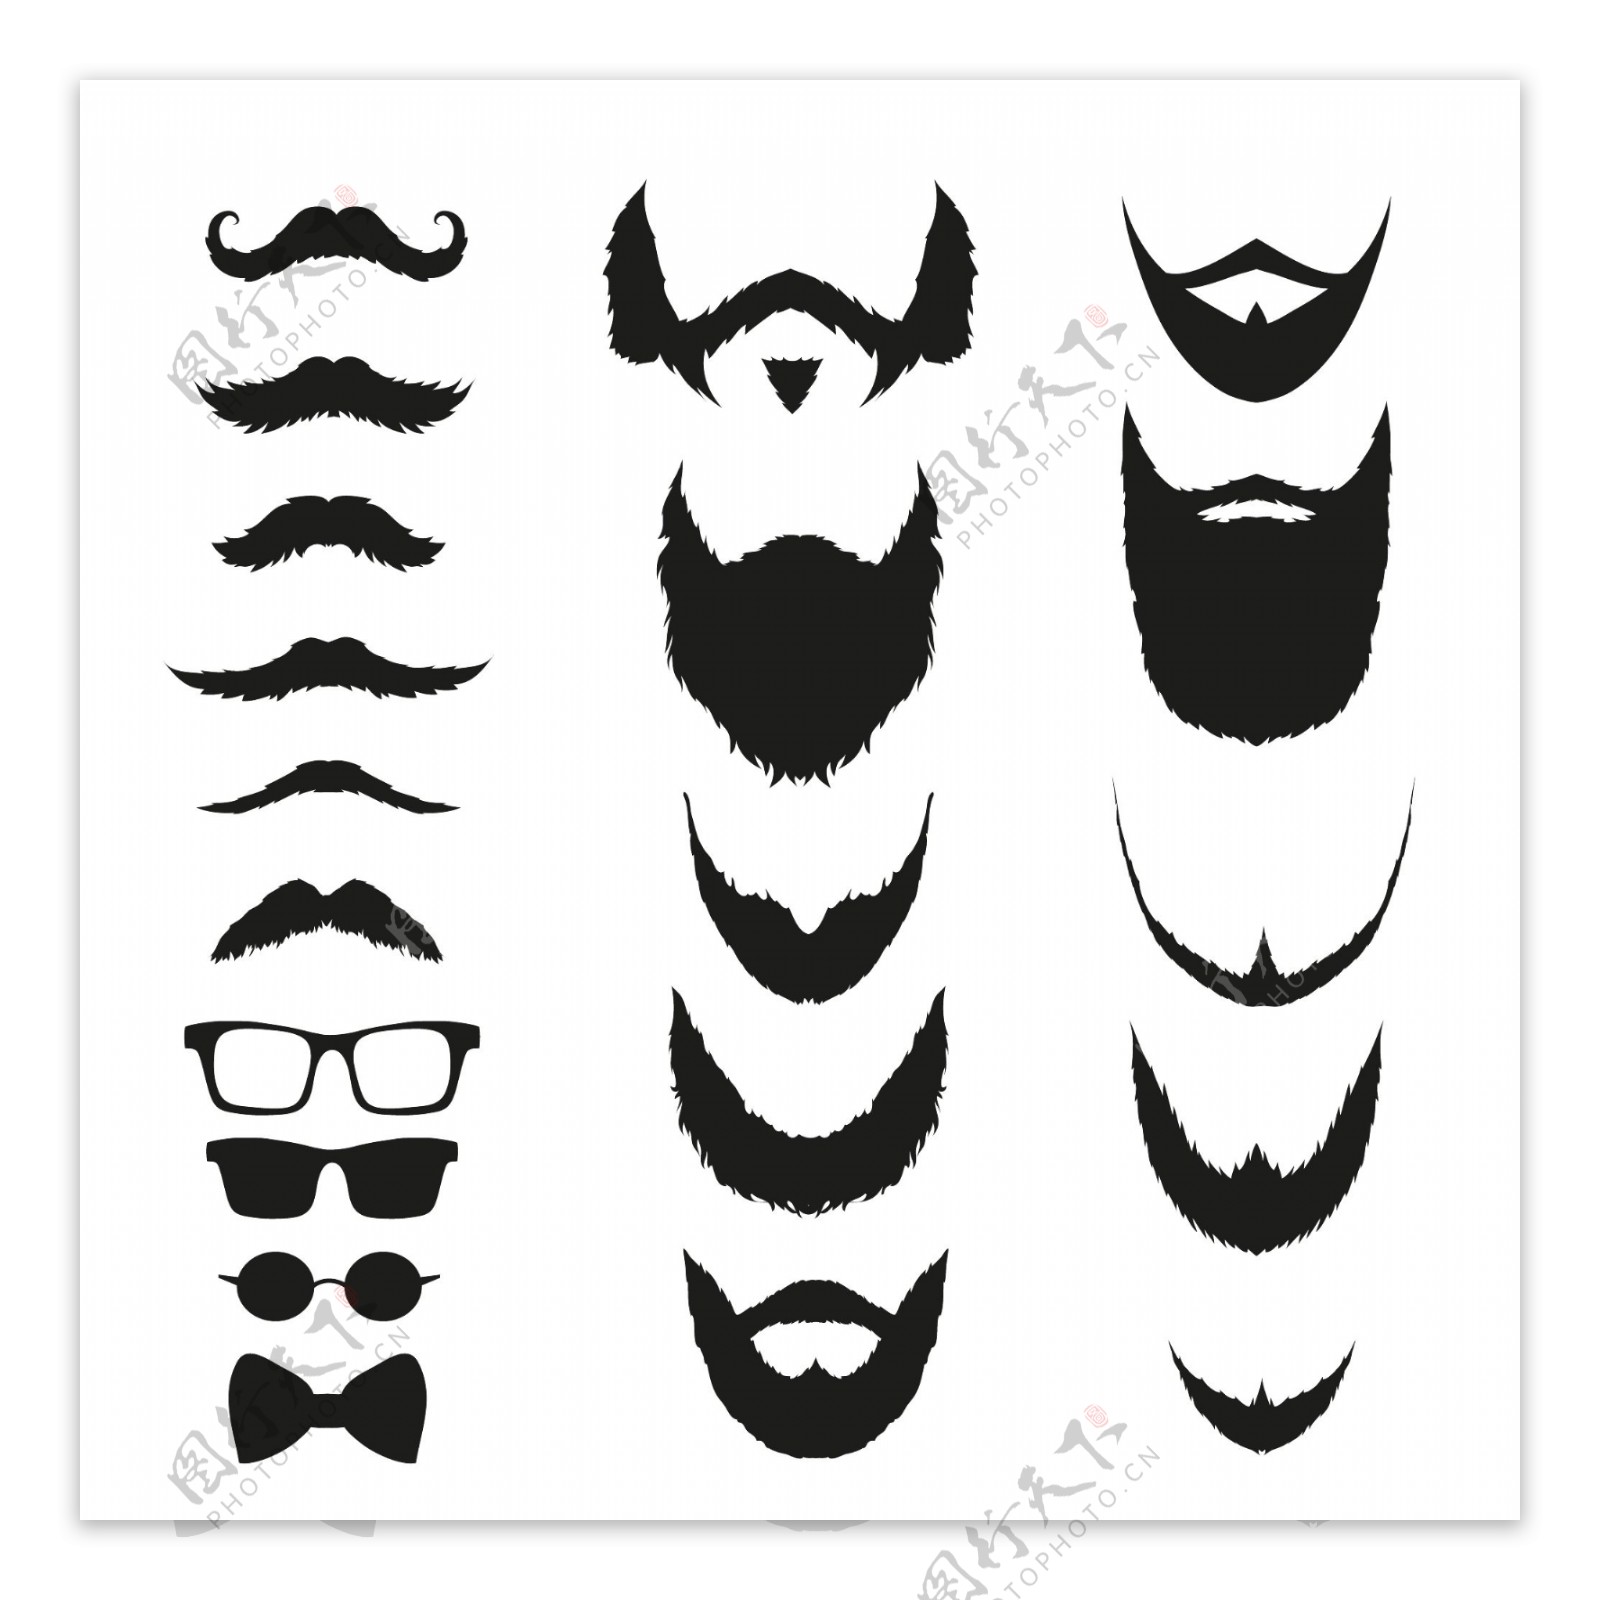 胡子肌肉男 胡子怎么修造型 男士胡子造型设计 肌肉男 胡子 络腮胡 健身迷网